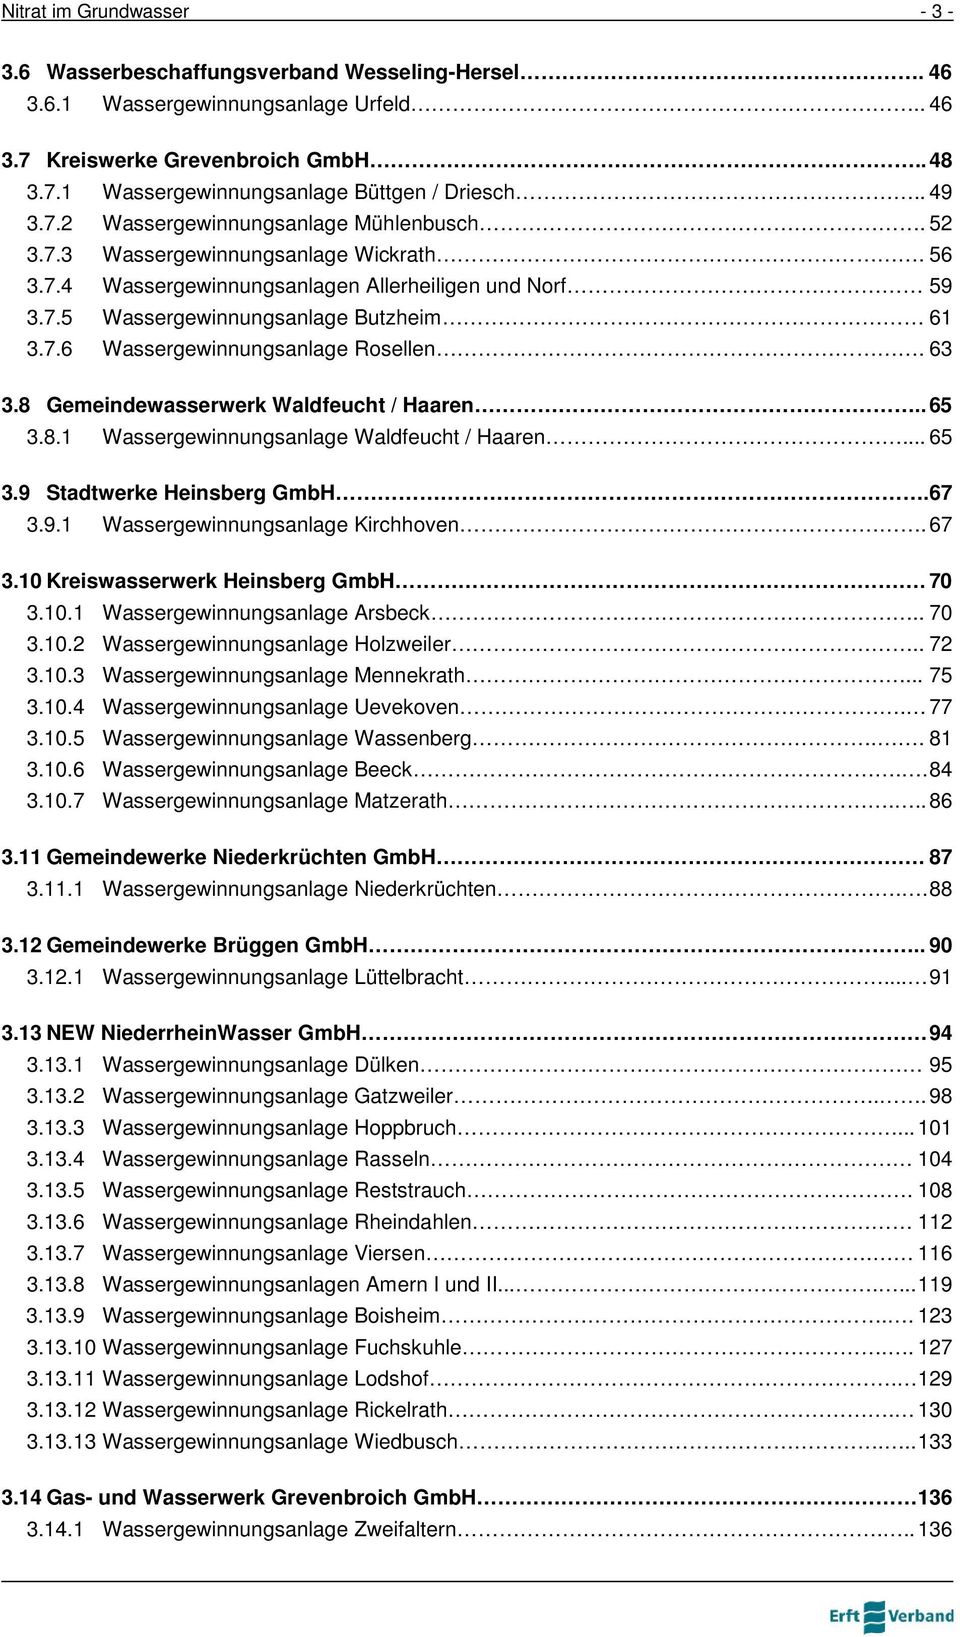 63 3.8 Gemeindewasserwerk Waldfeucht / Haaren.. 65 3.8.1 Wassergewinnungsanlage Waldfeucht / Haaren... 65 3.9 Stadtwerke Heinsberg GmbH.67 3.9.1 Wassergewinnungsanlage Kirchhoven. 67 3.